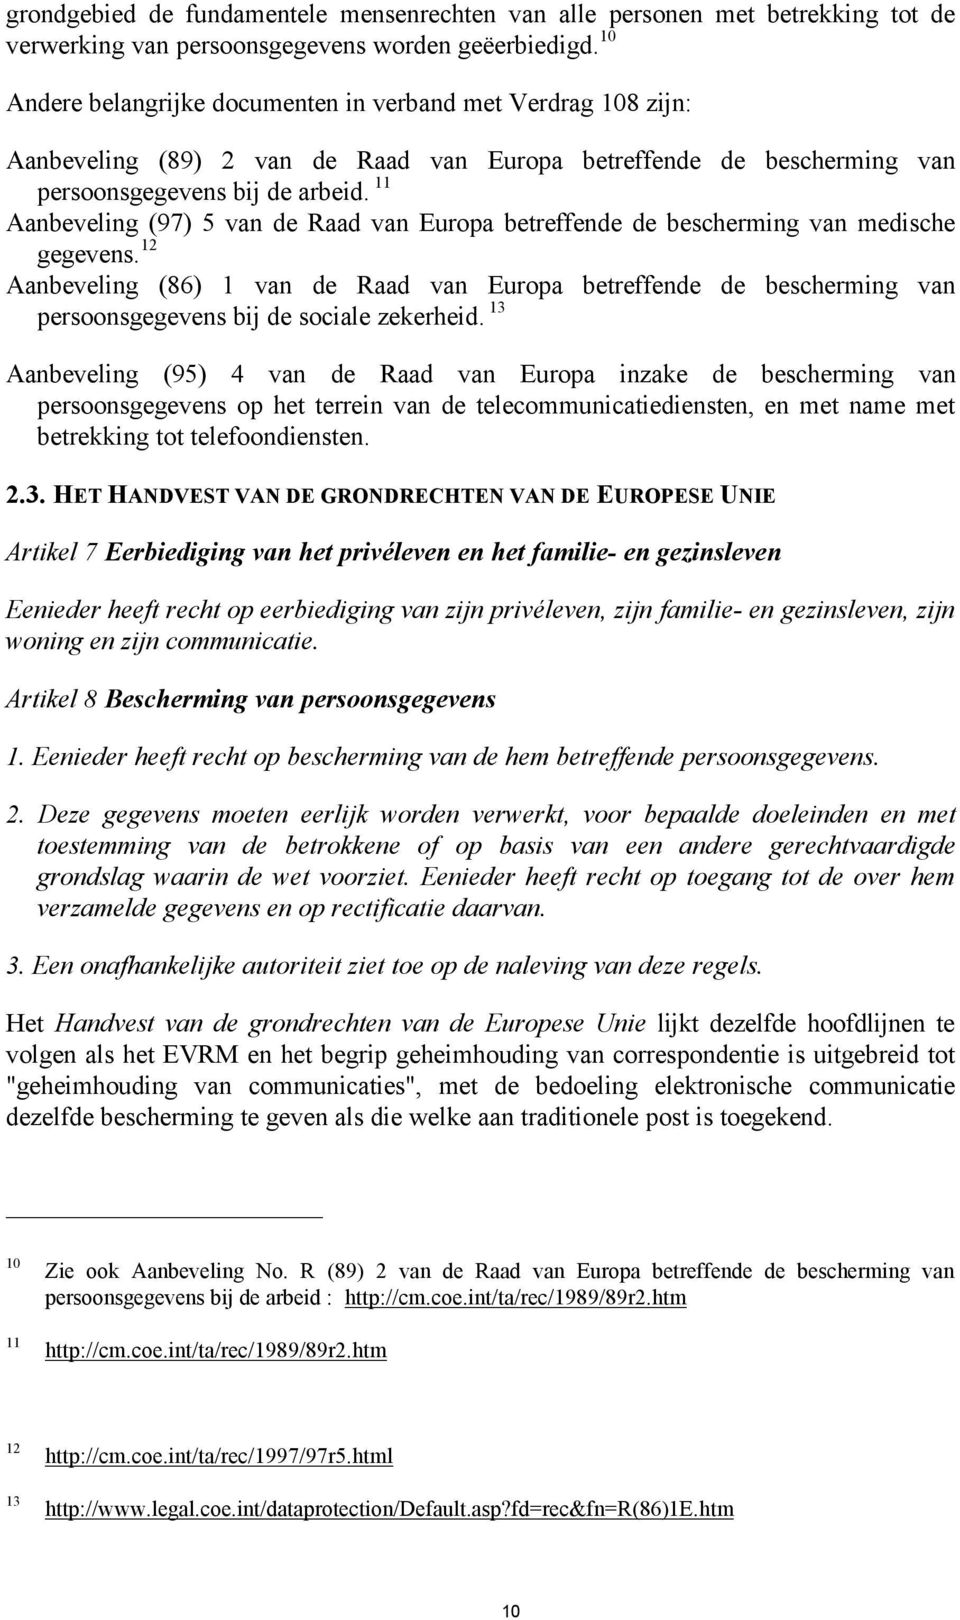 11 Aanbeveling (97) 5 van de Raad van Europa betreffende de bescherming van medische gegevens.